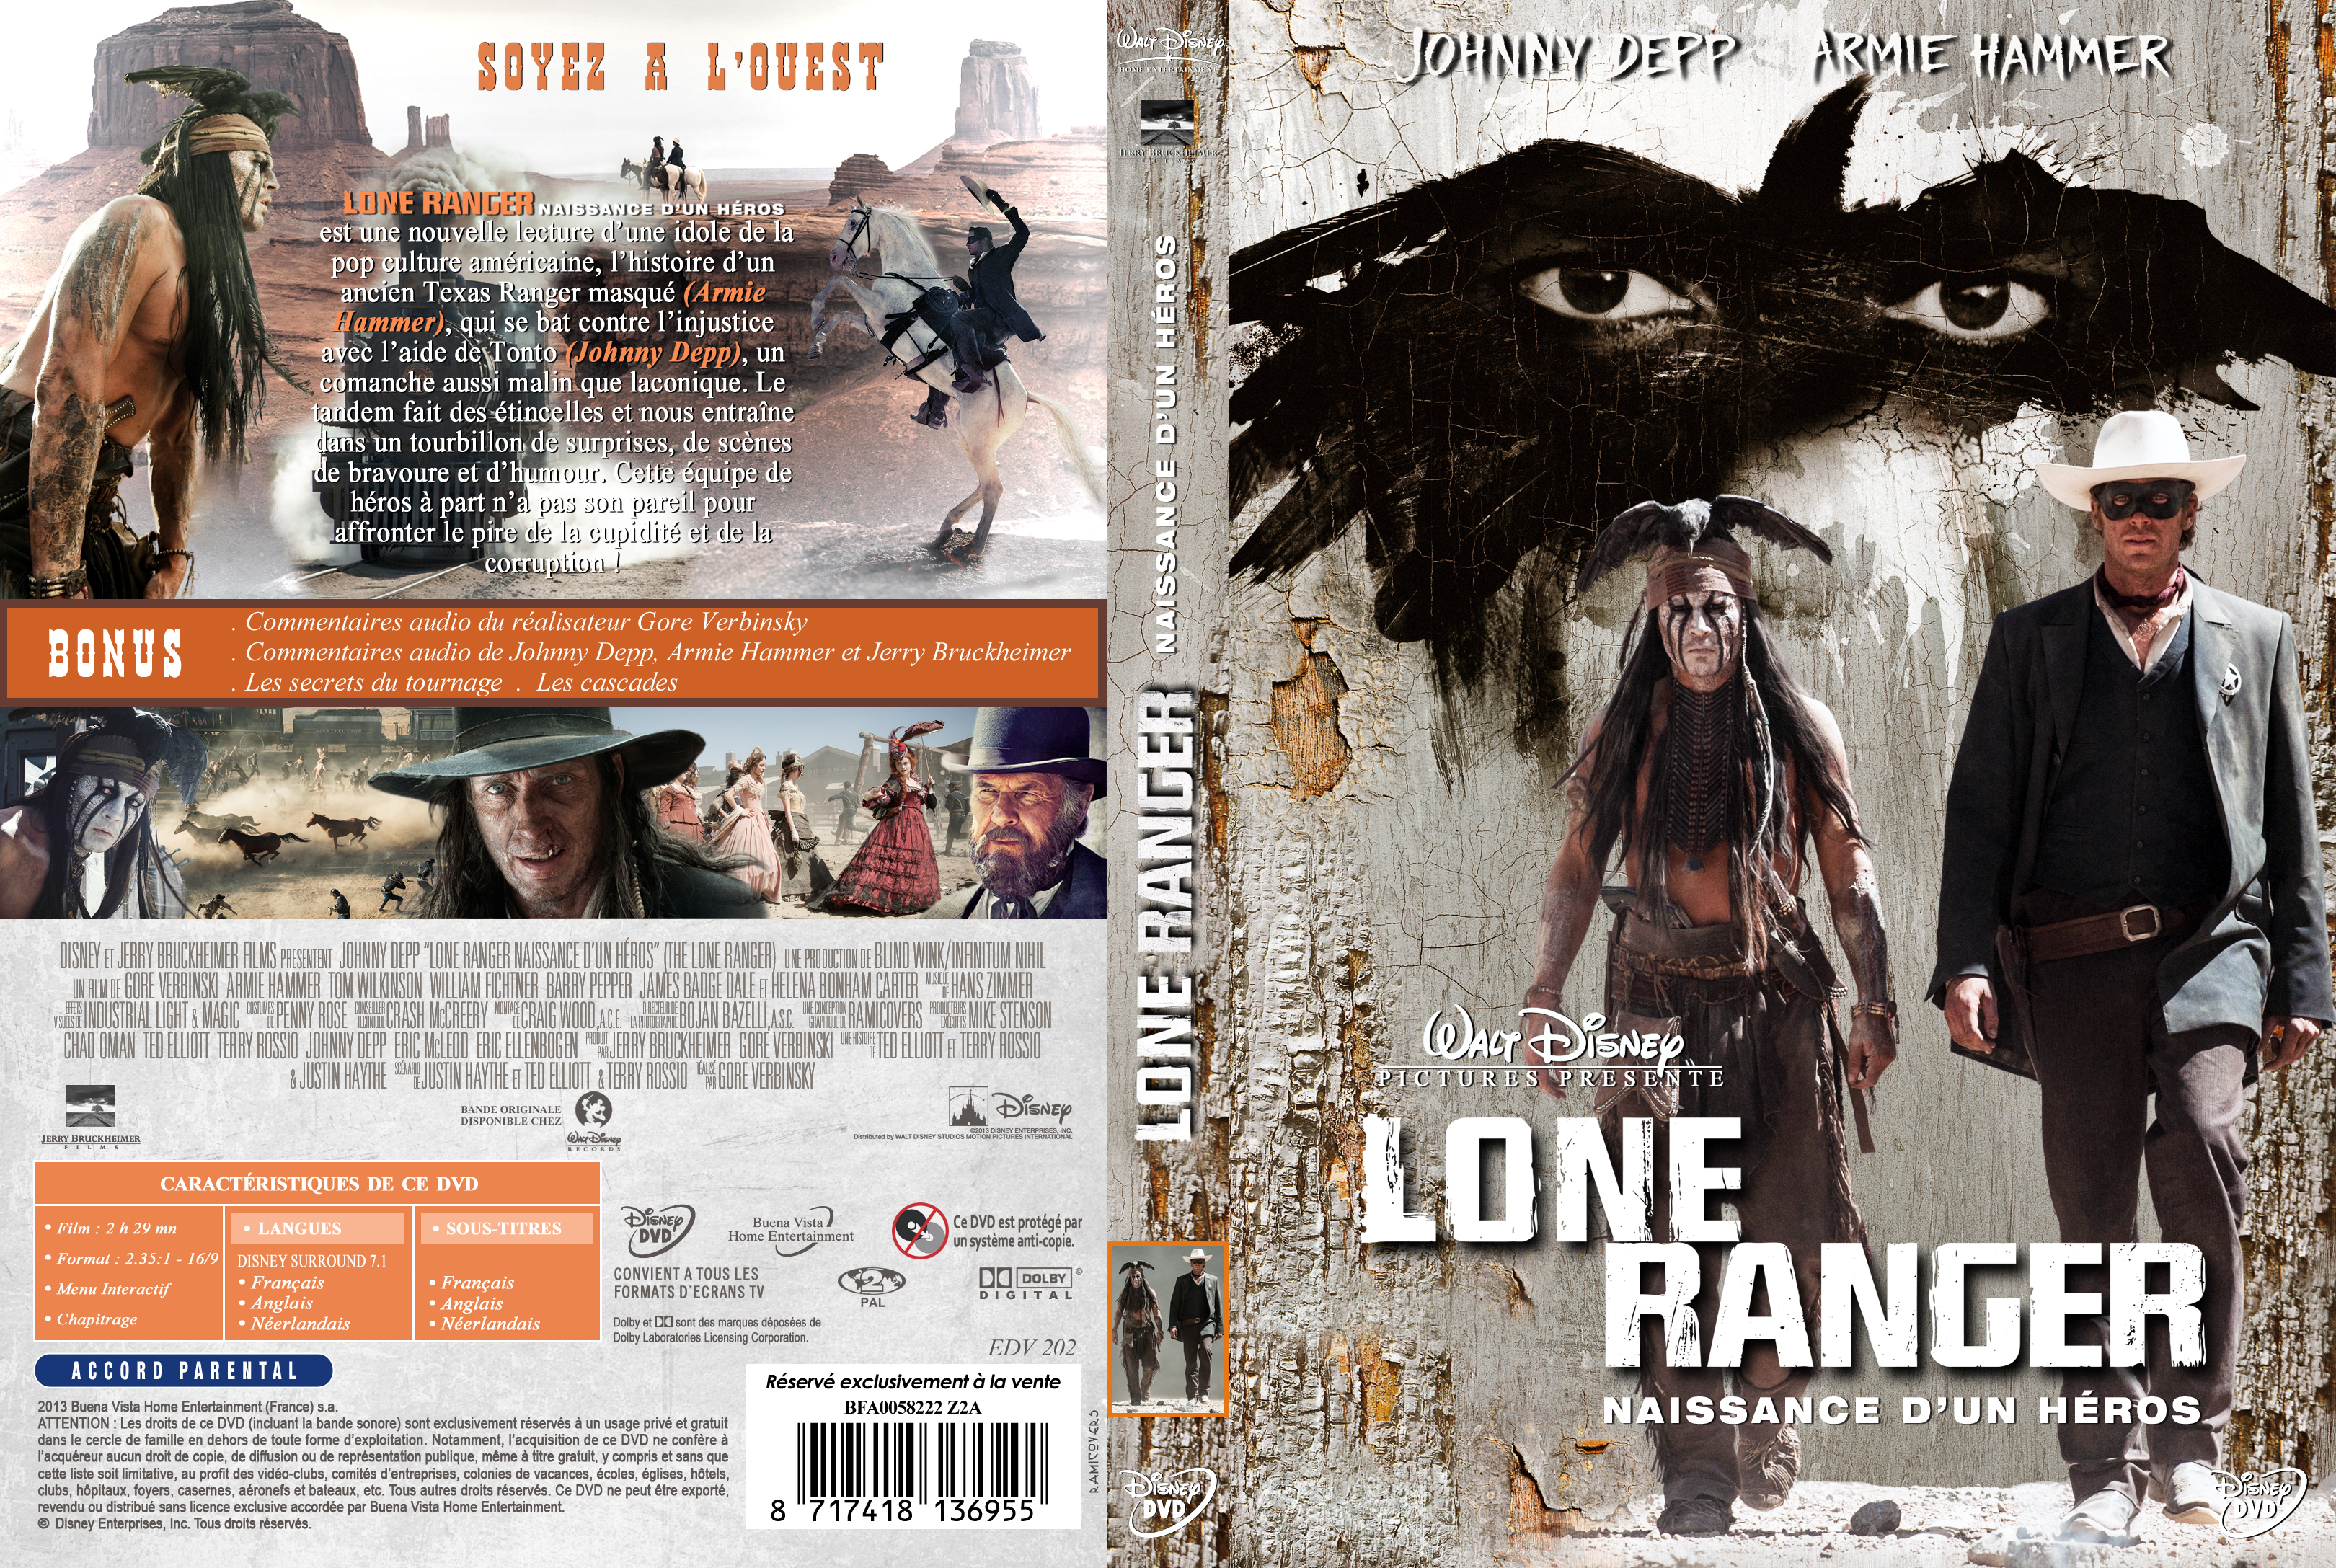 Jaquette DVD The Lone Ranger custom v2